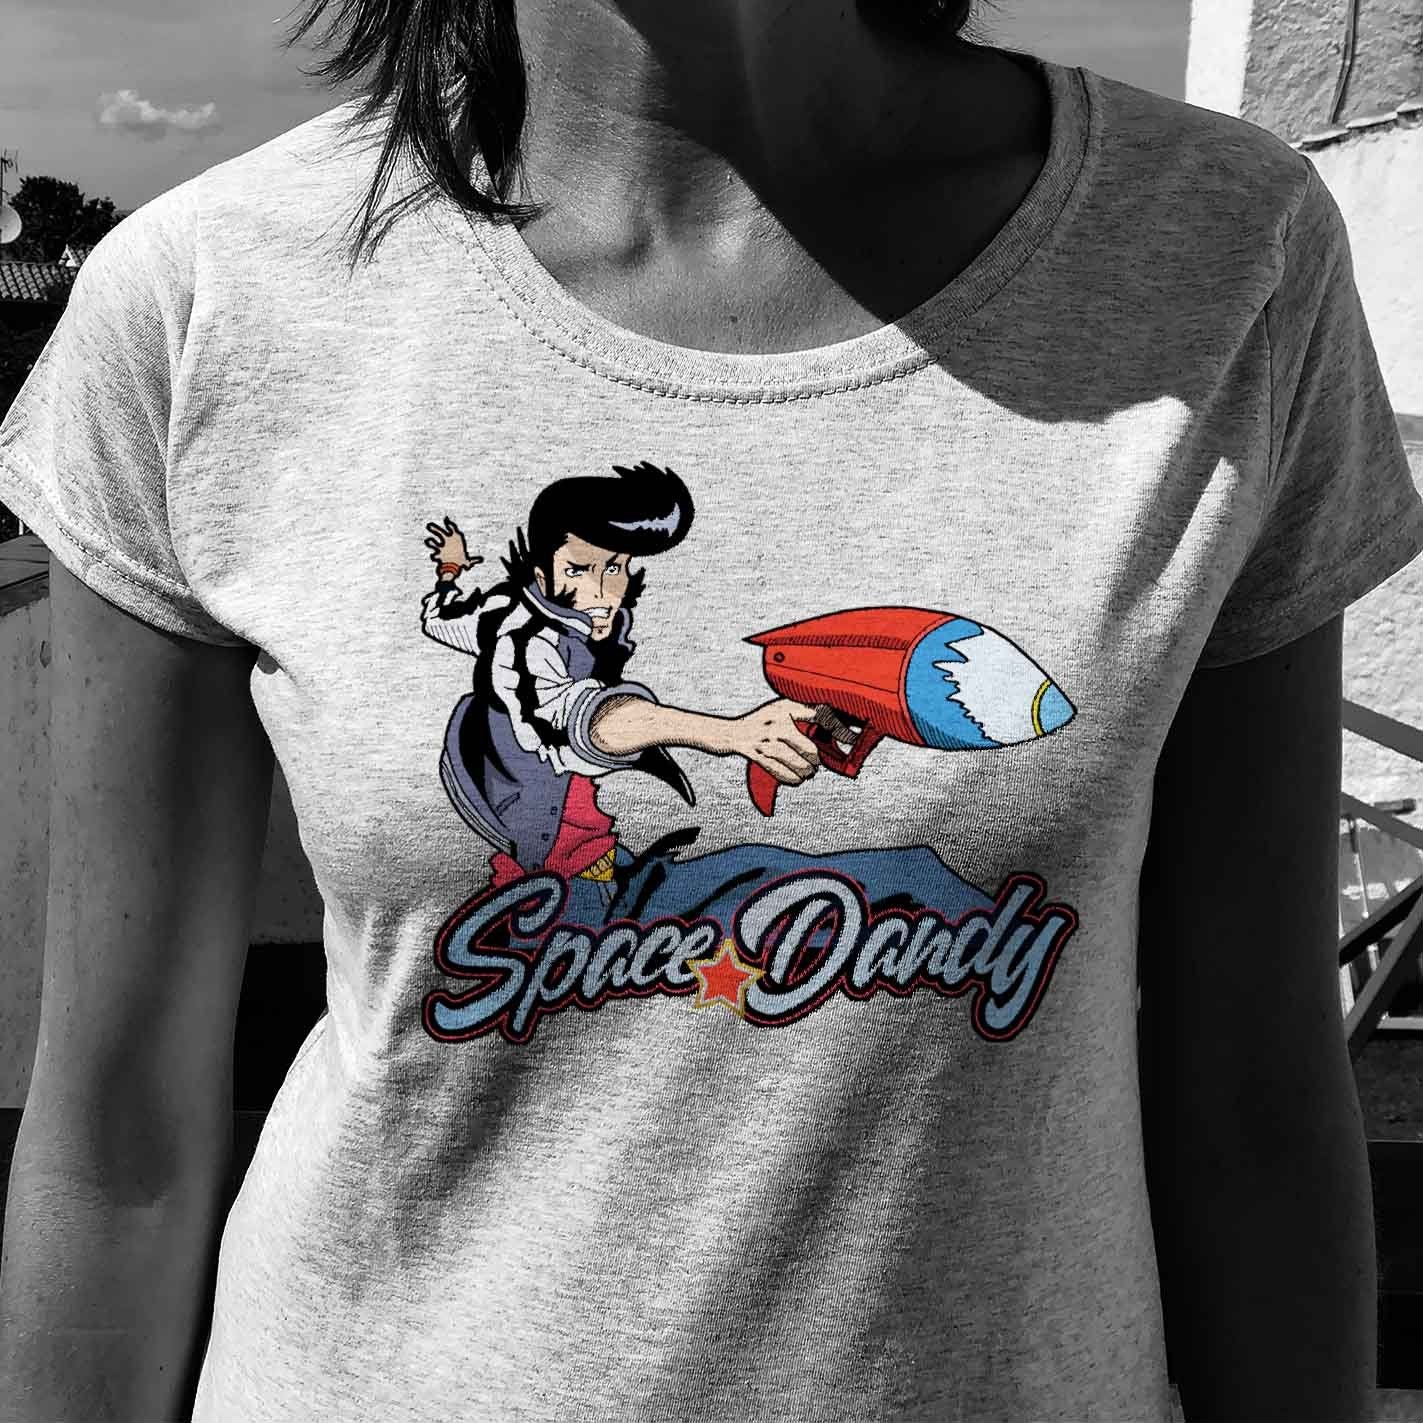 Camiseta del gran Dandy! de la serie Space Dandy.